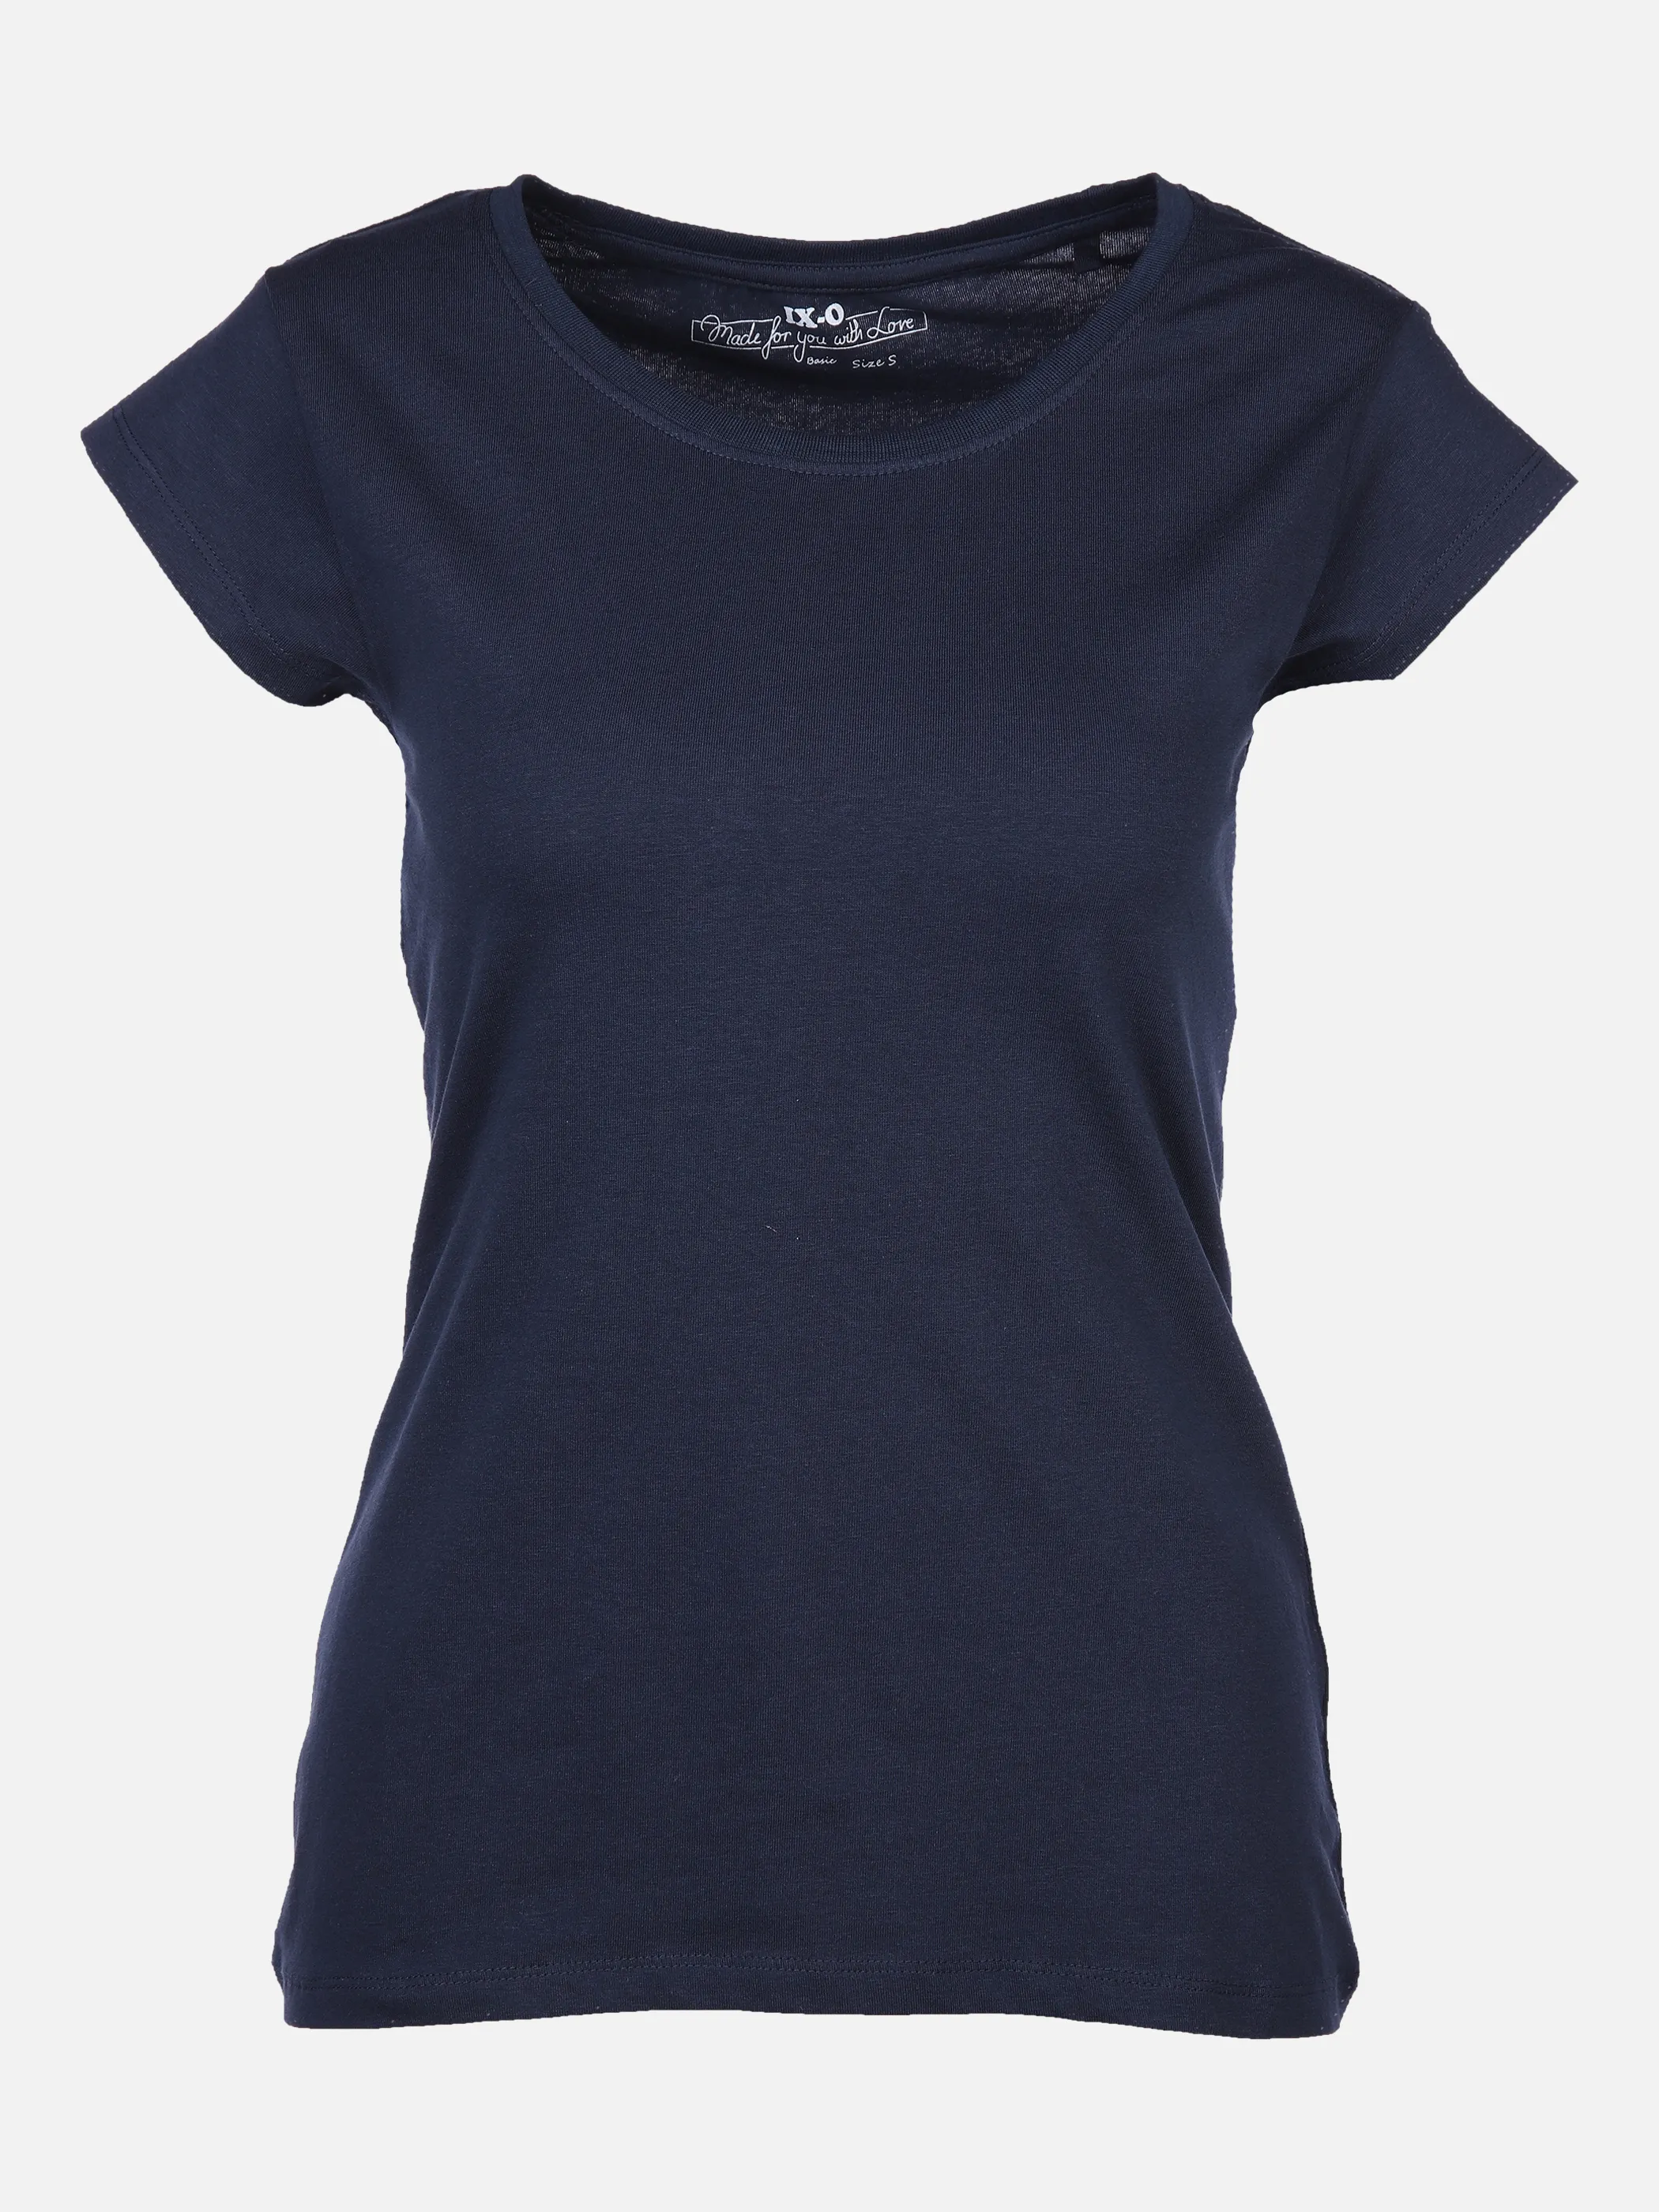 Damen Kurzarm-Shirts & T-Shirts günstig Mode AWG kaufen | online